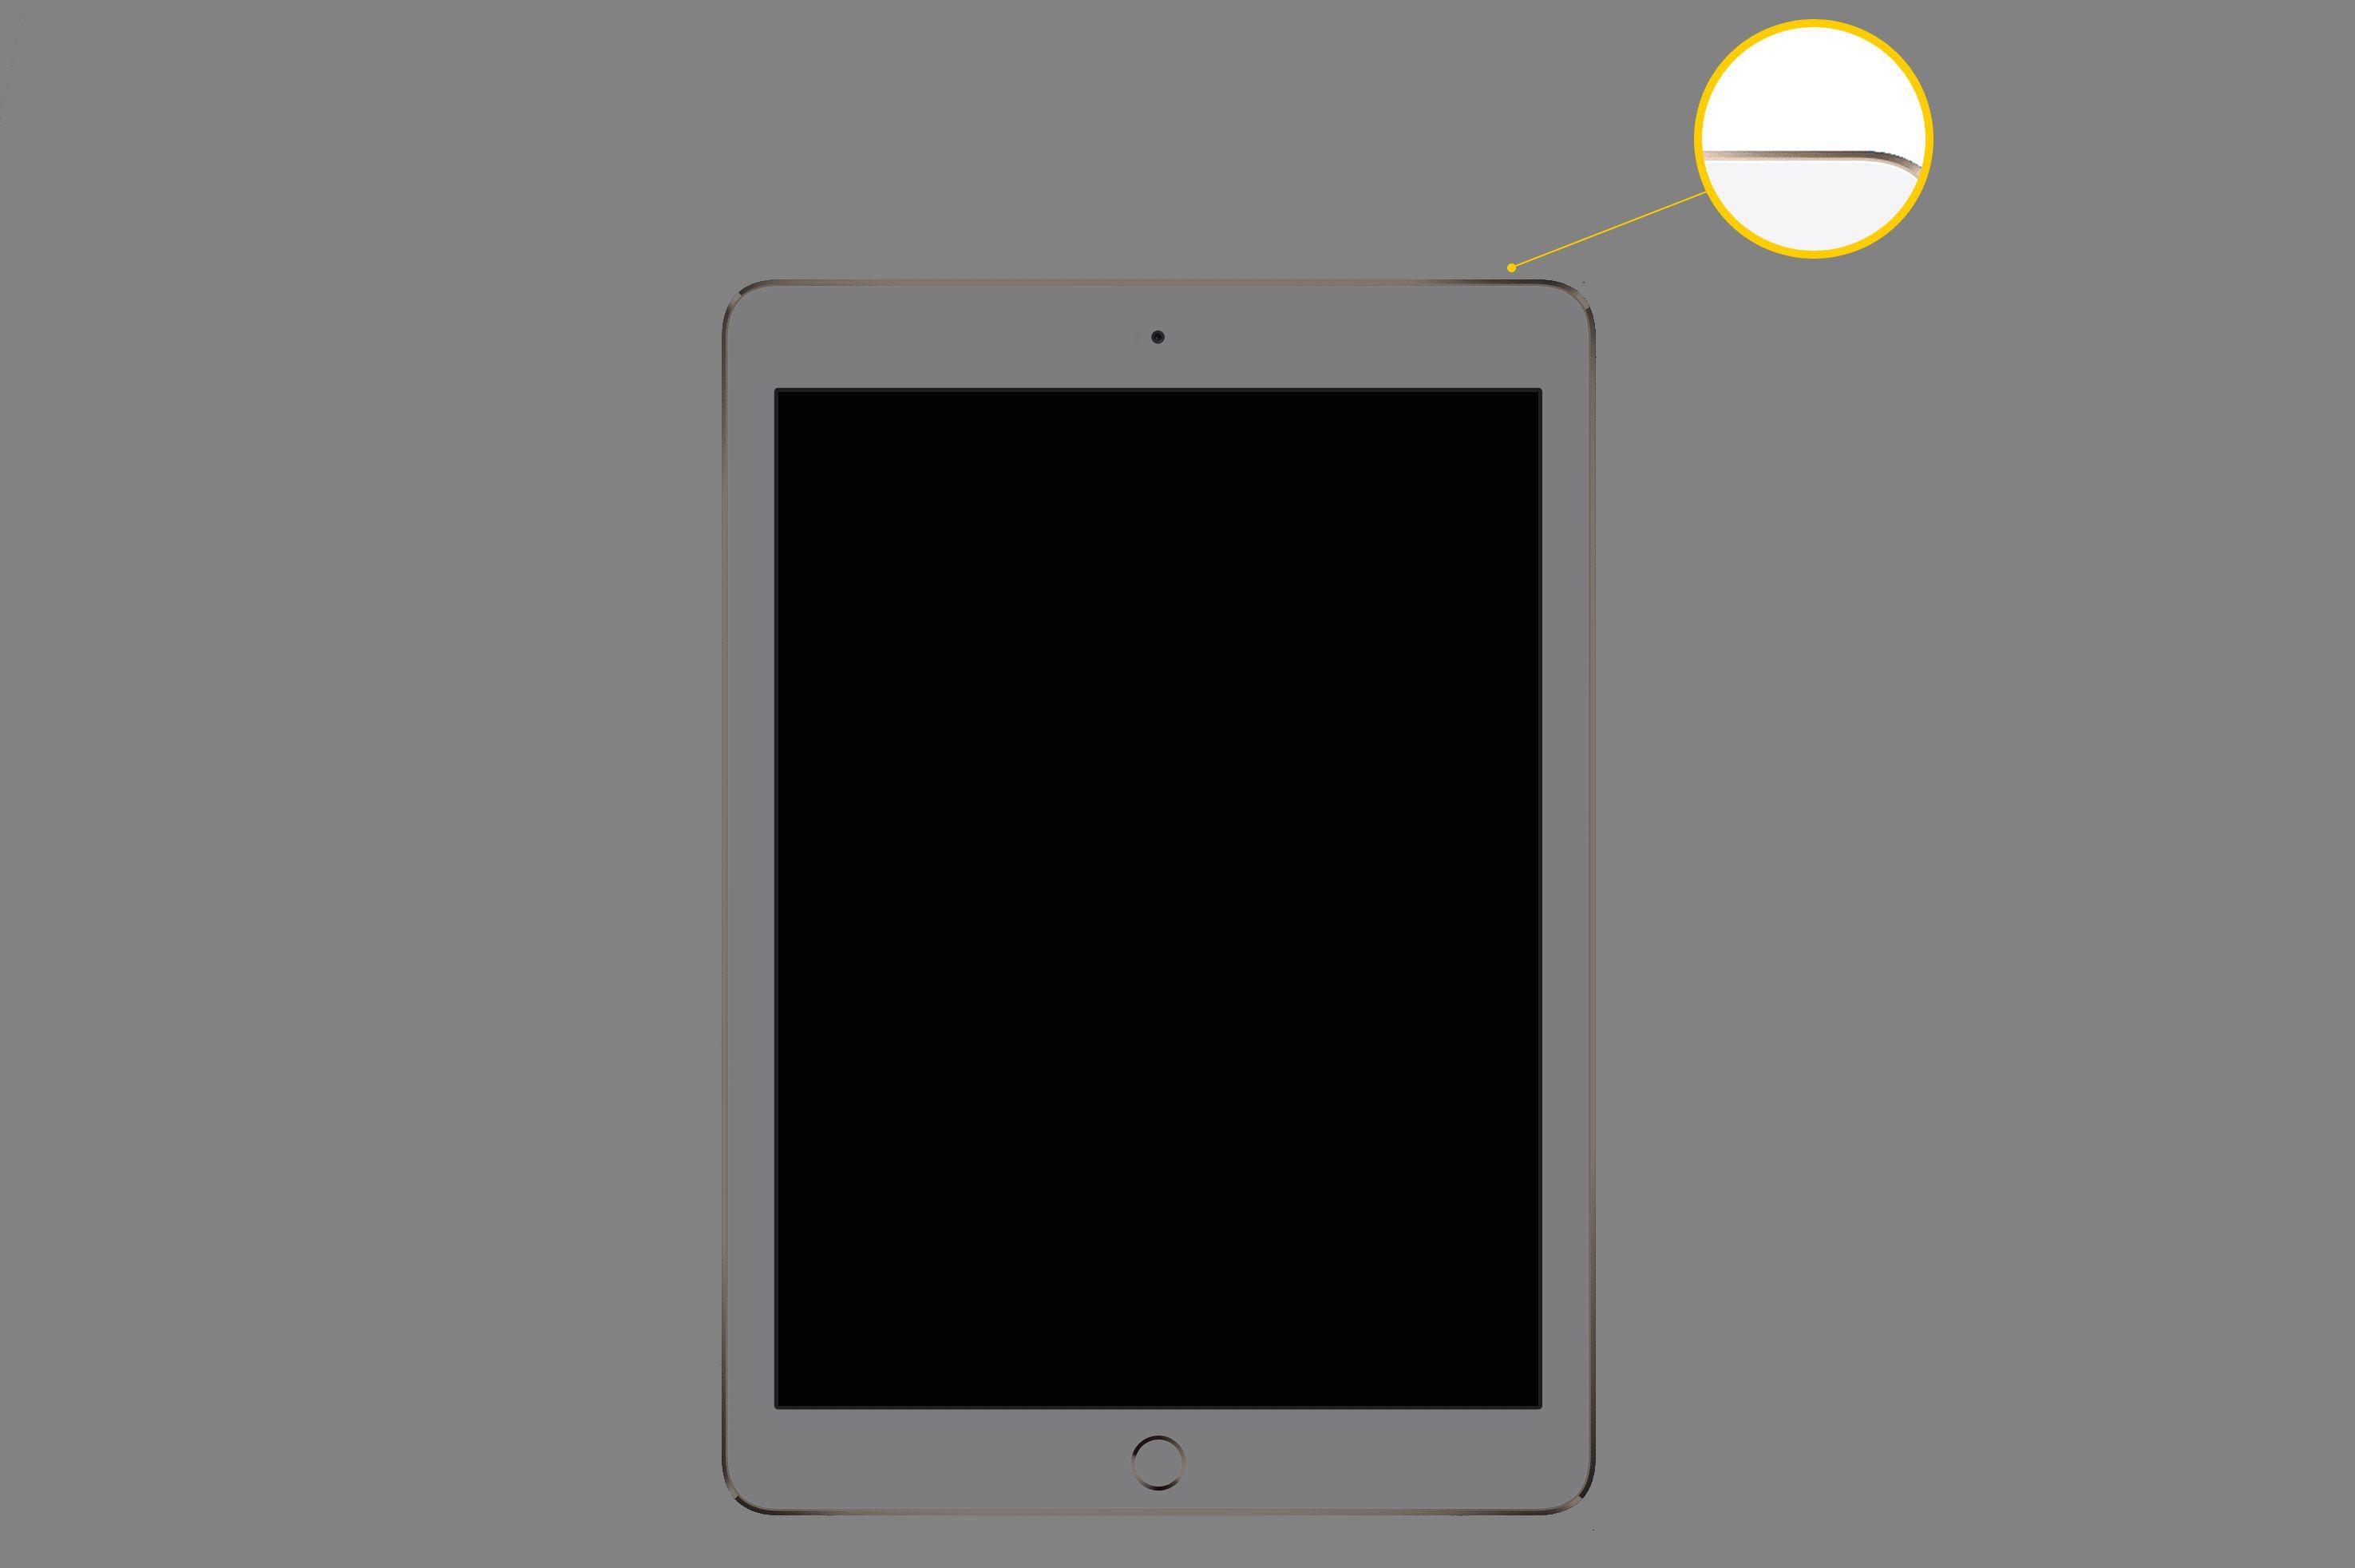 iPad с экраном, подсвечивающим кнопку «Режим сна / Пробуждение» в правом верхнем углу устройства